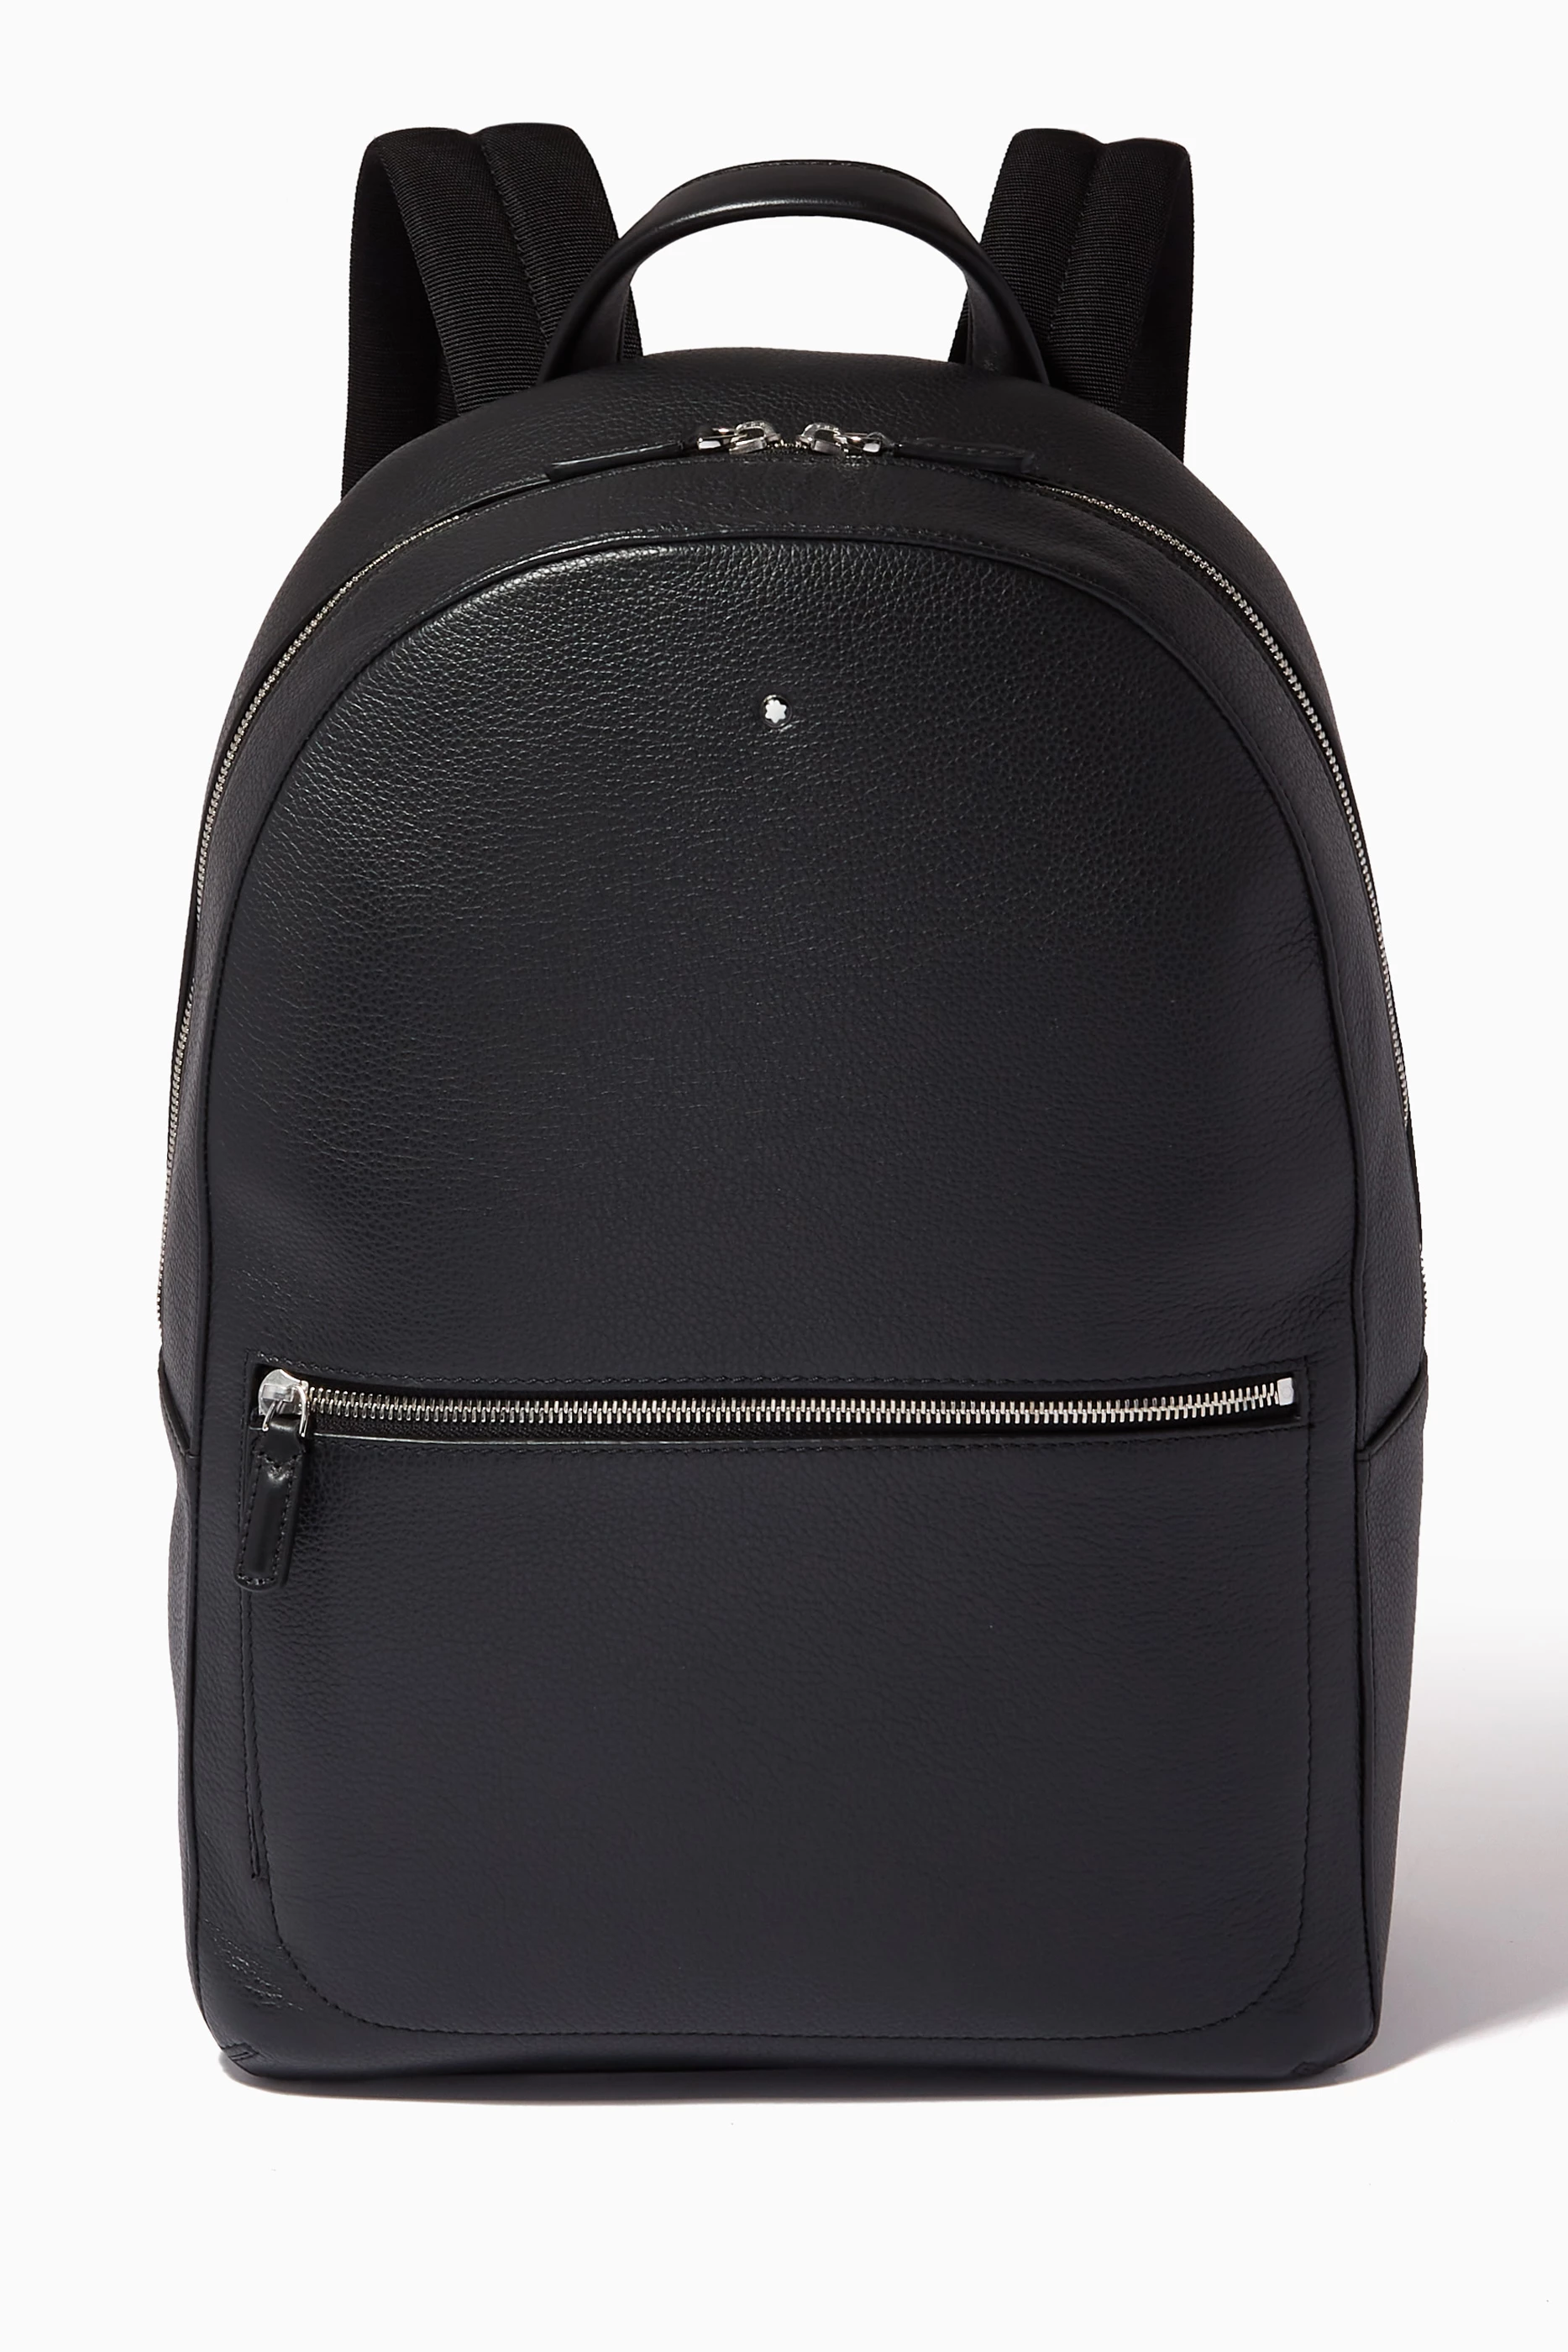 Meisterstuck Soft Grain Leather Medium Backpack Bloomingdales Men Accessories Bags Laptop Bags 